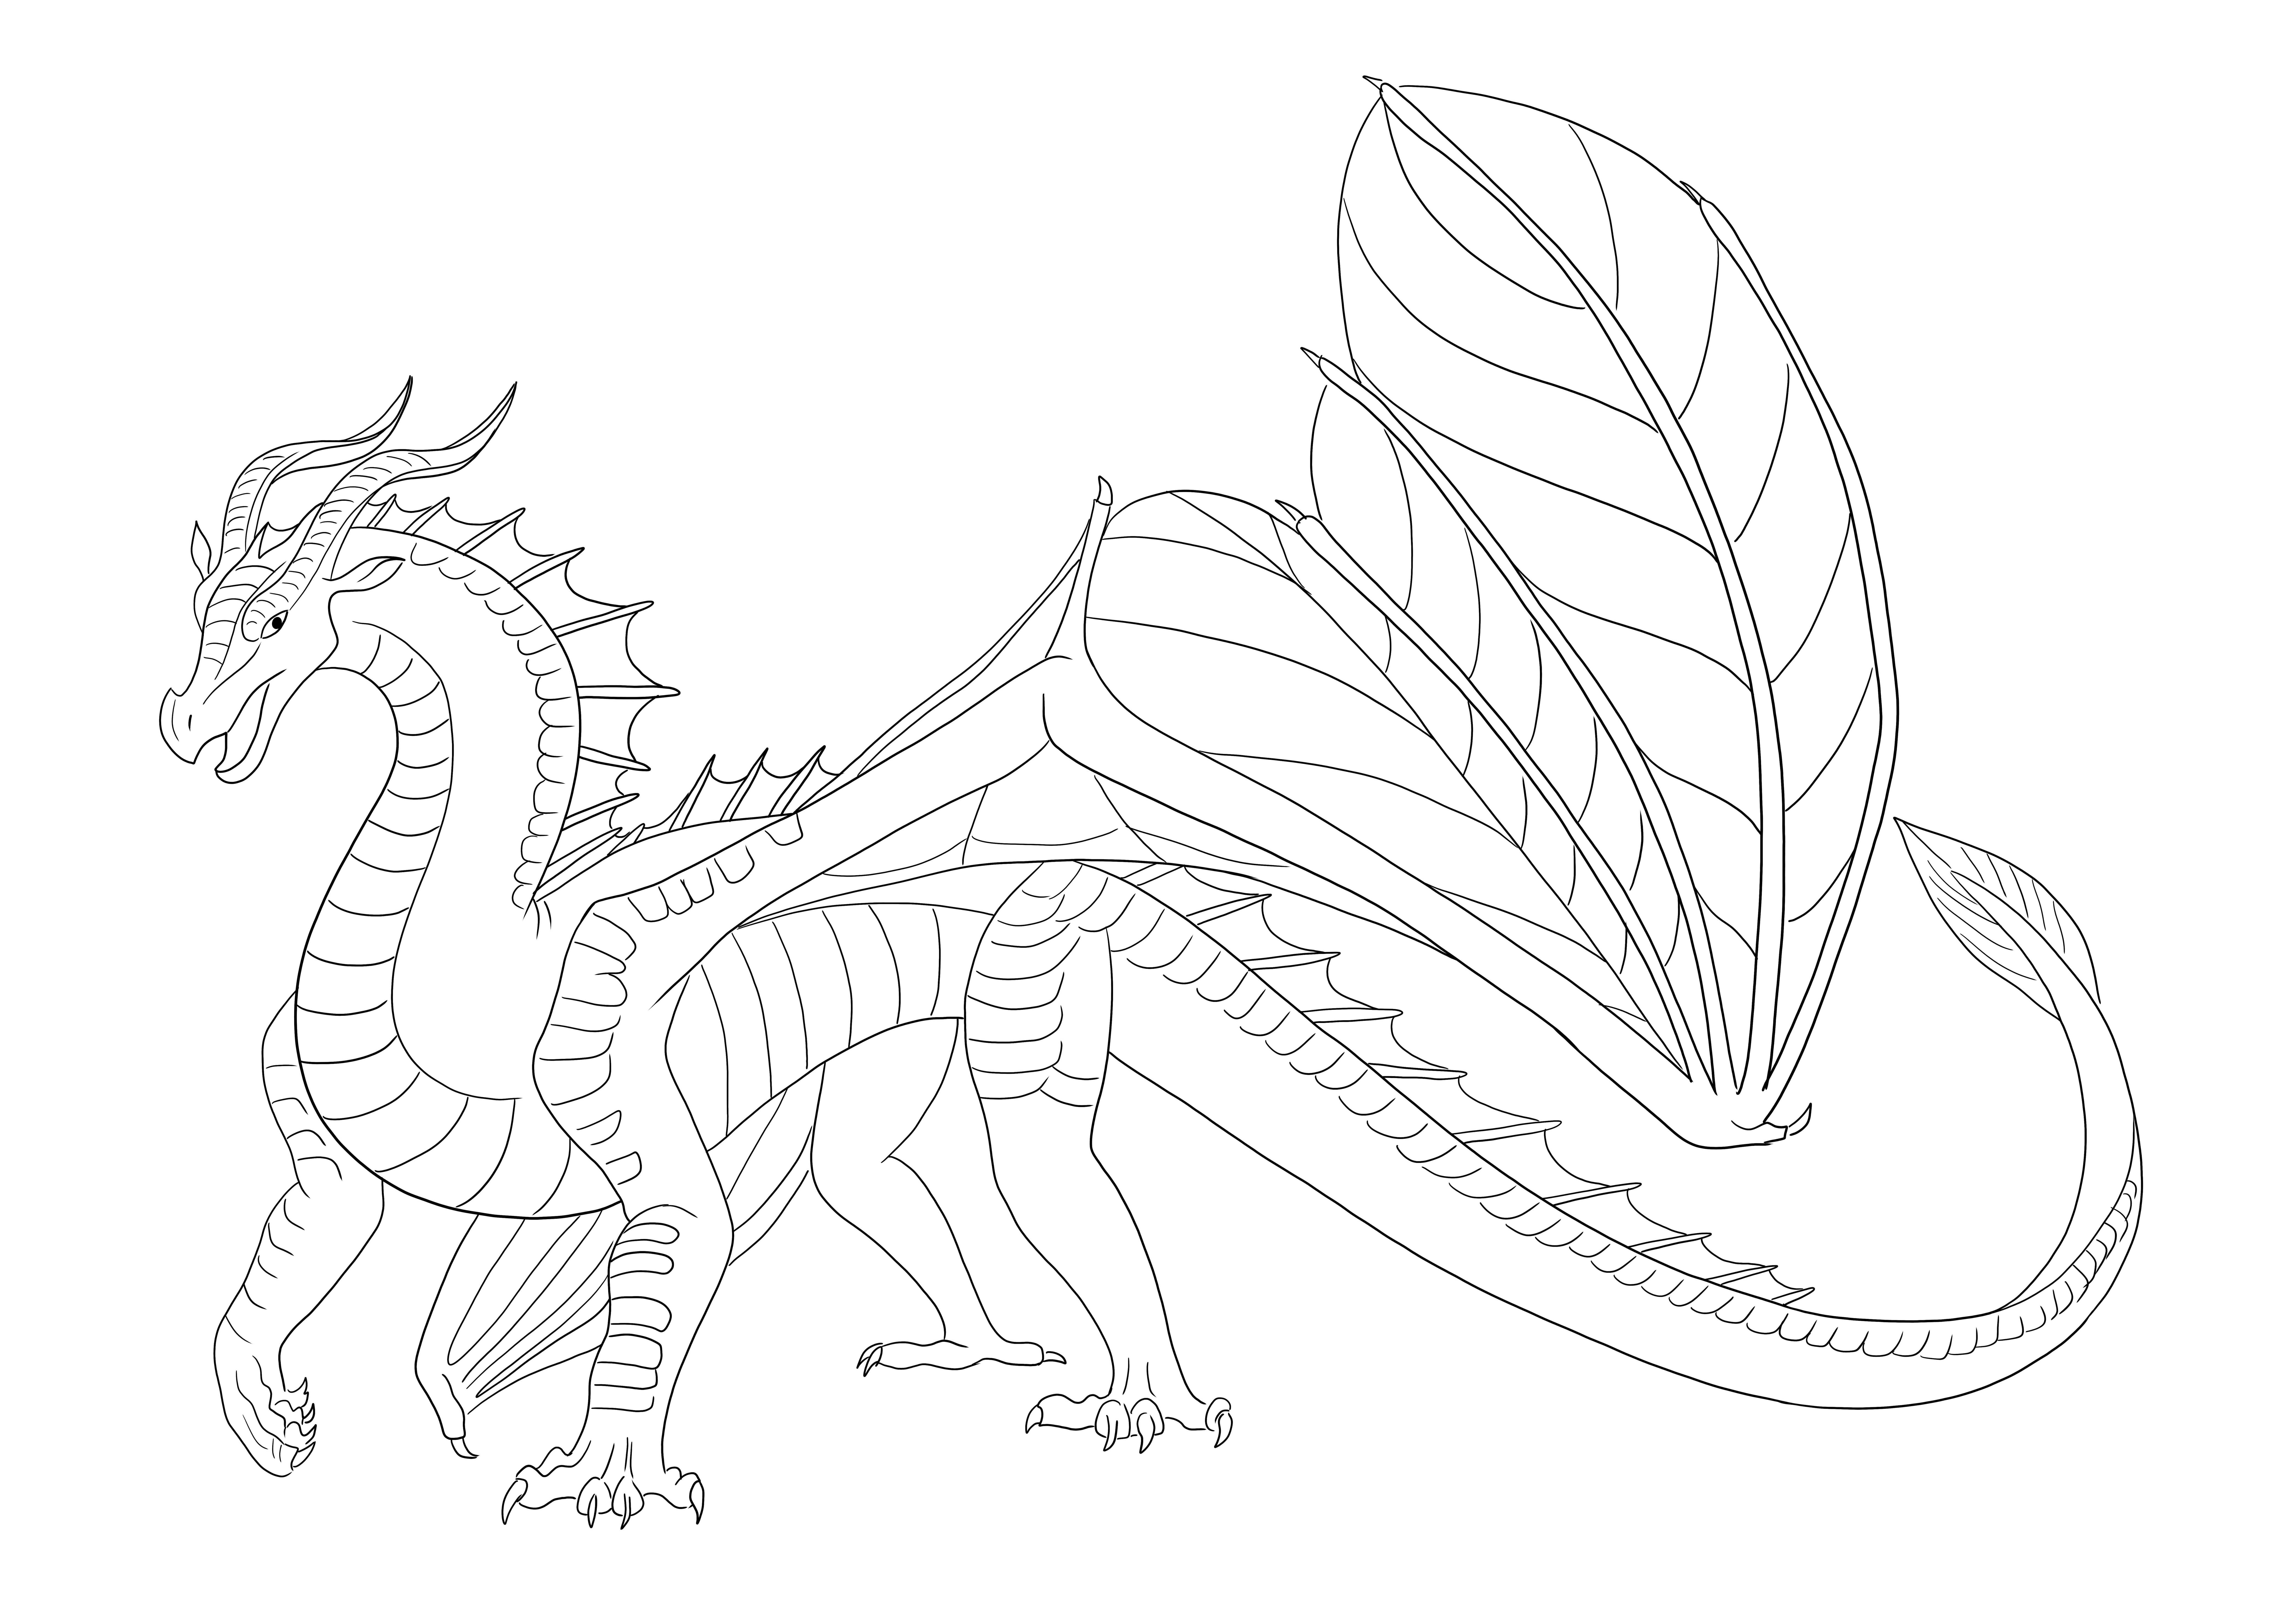 Disegni da colorare gratis di Leafwing Dragon da stampare per i bambini